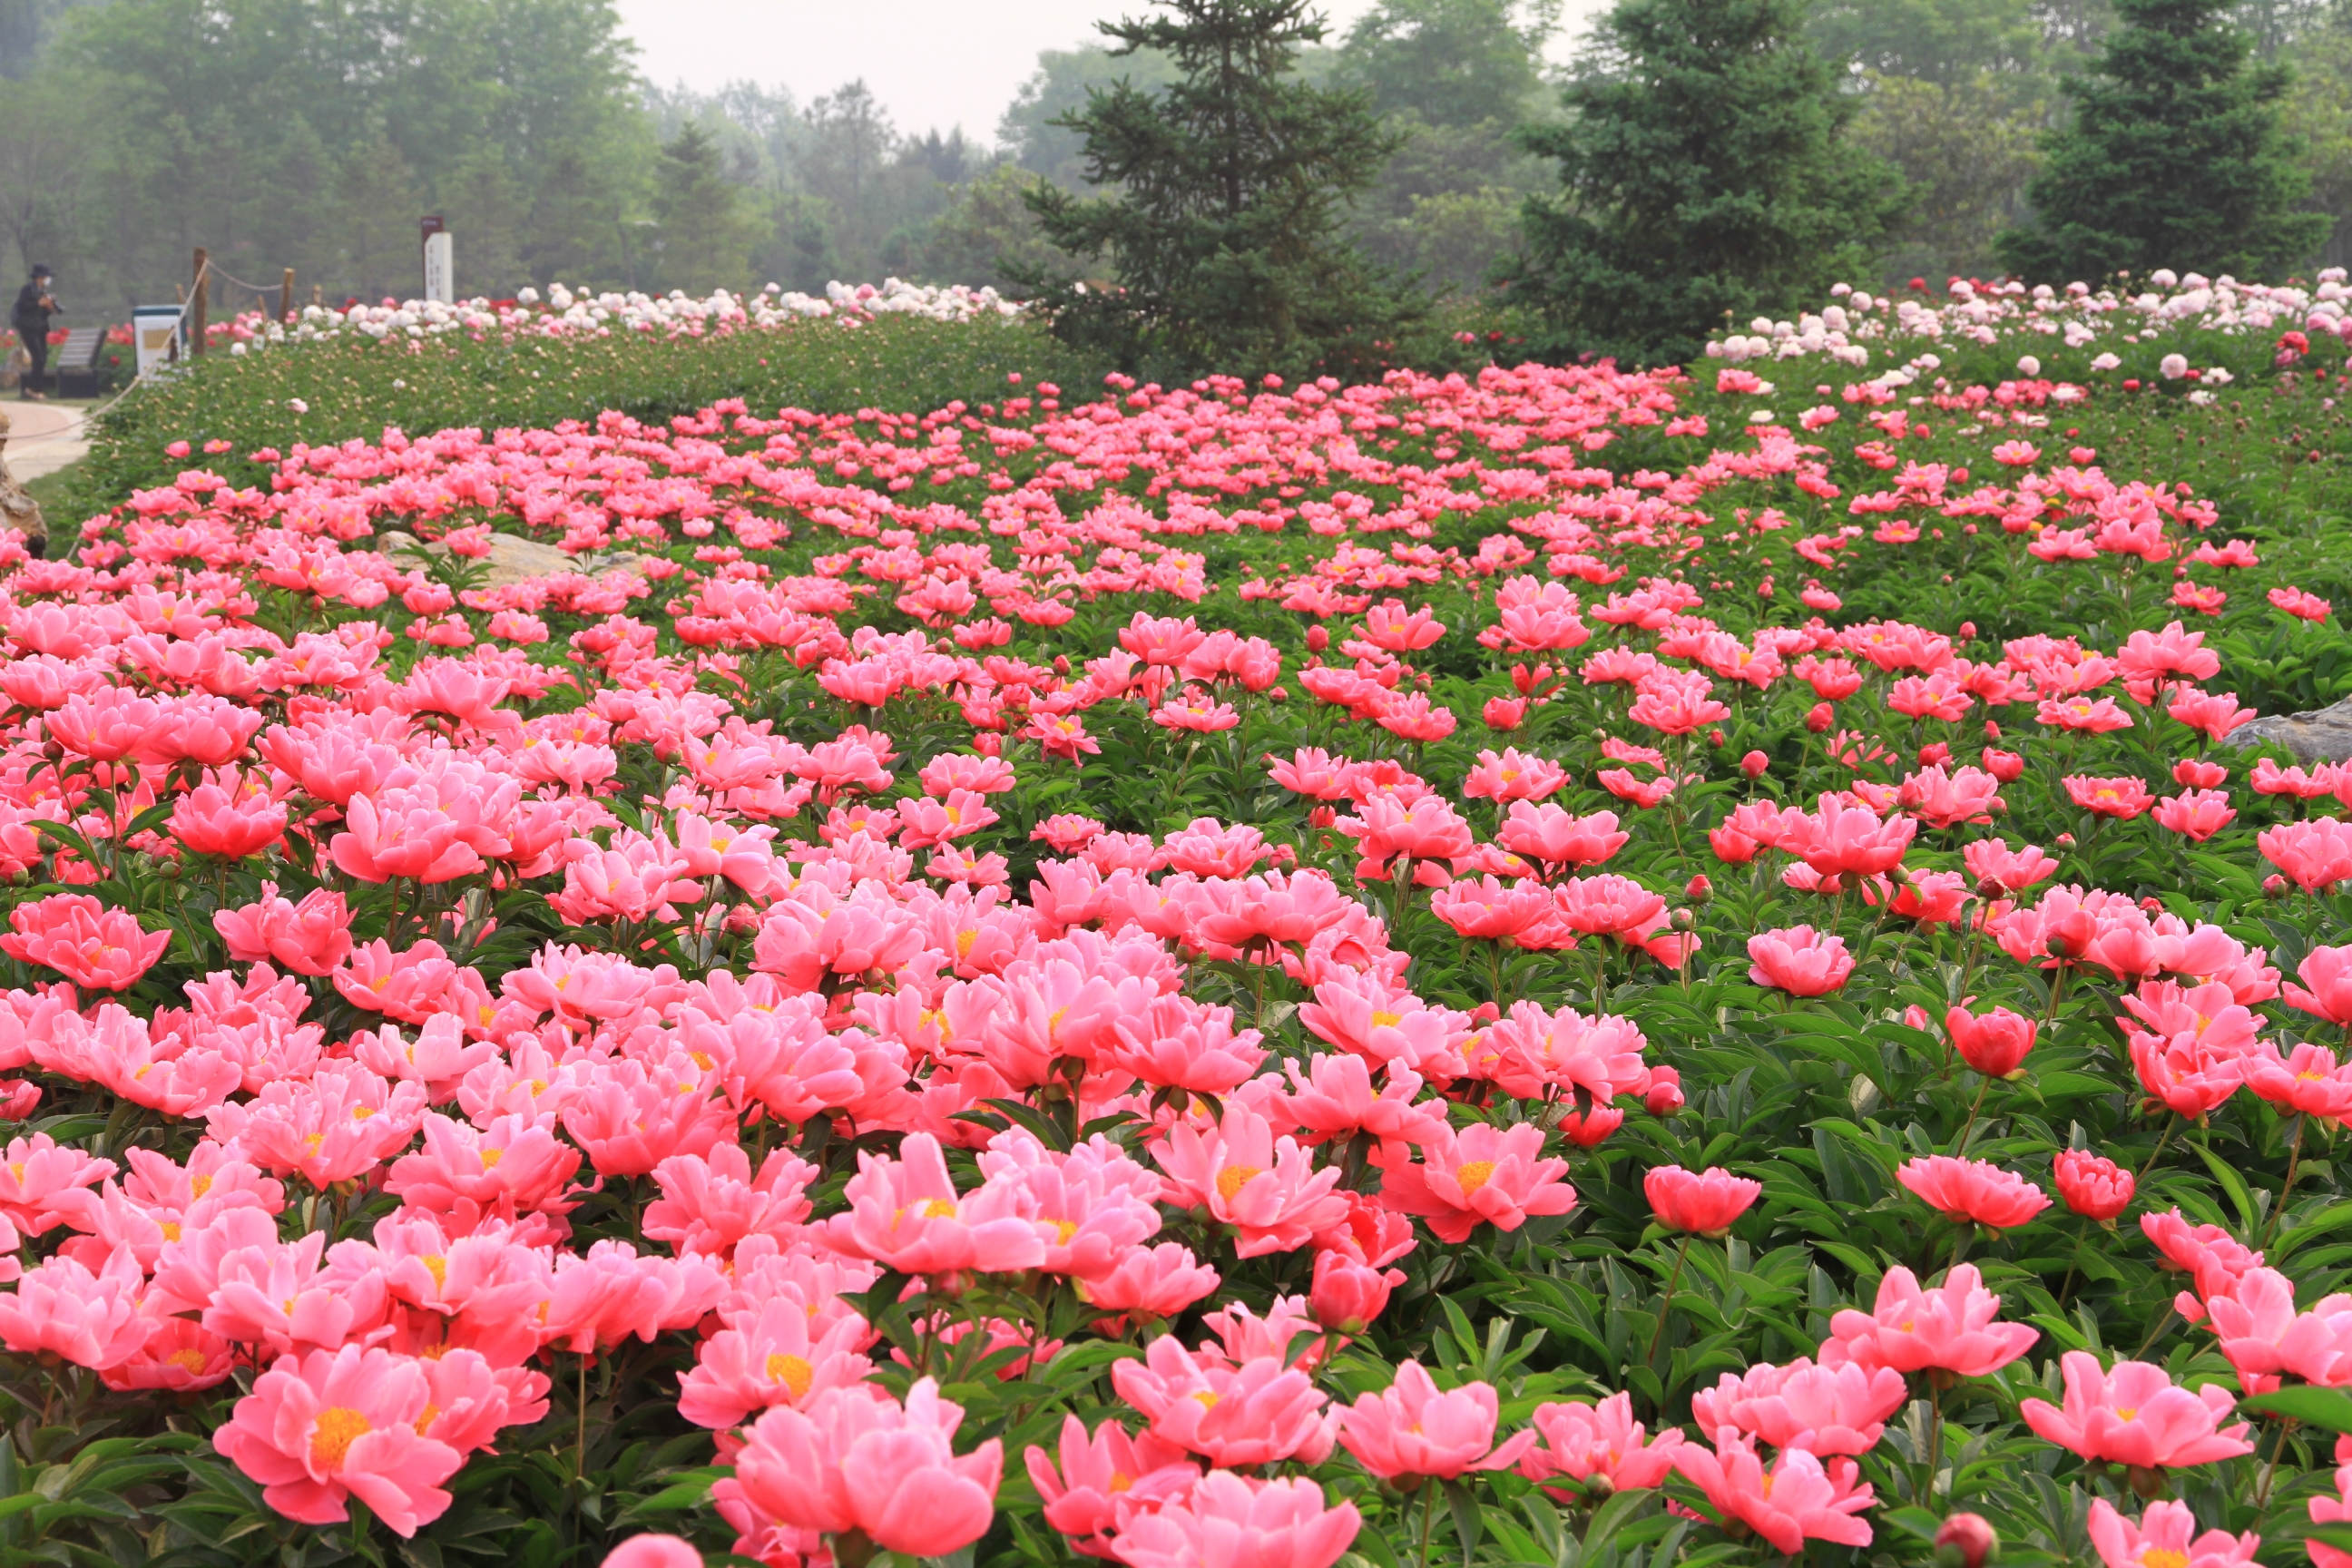 扩散周知郑州市园林局10万盆月季花免费赠市民了